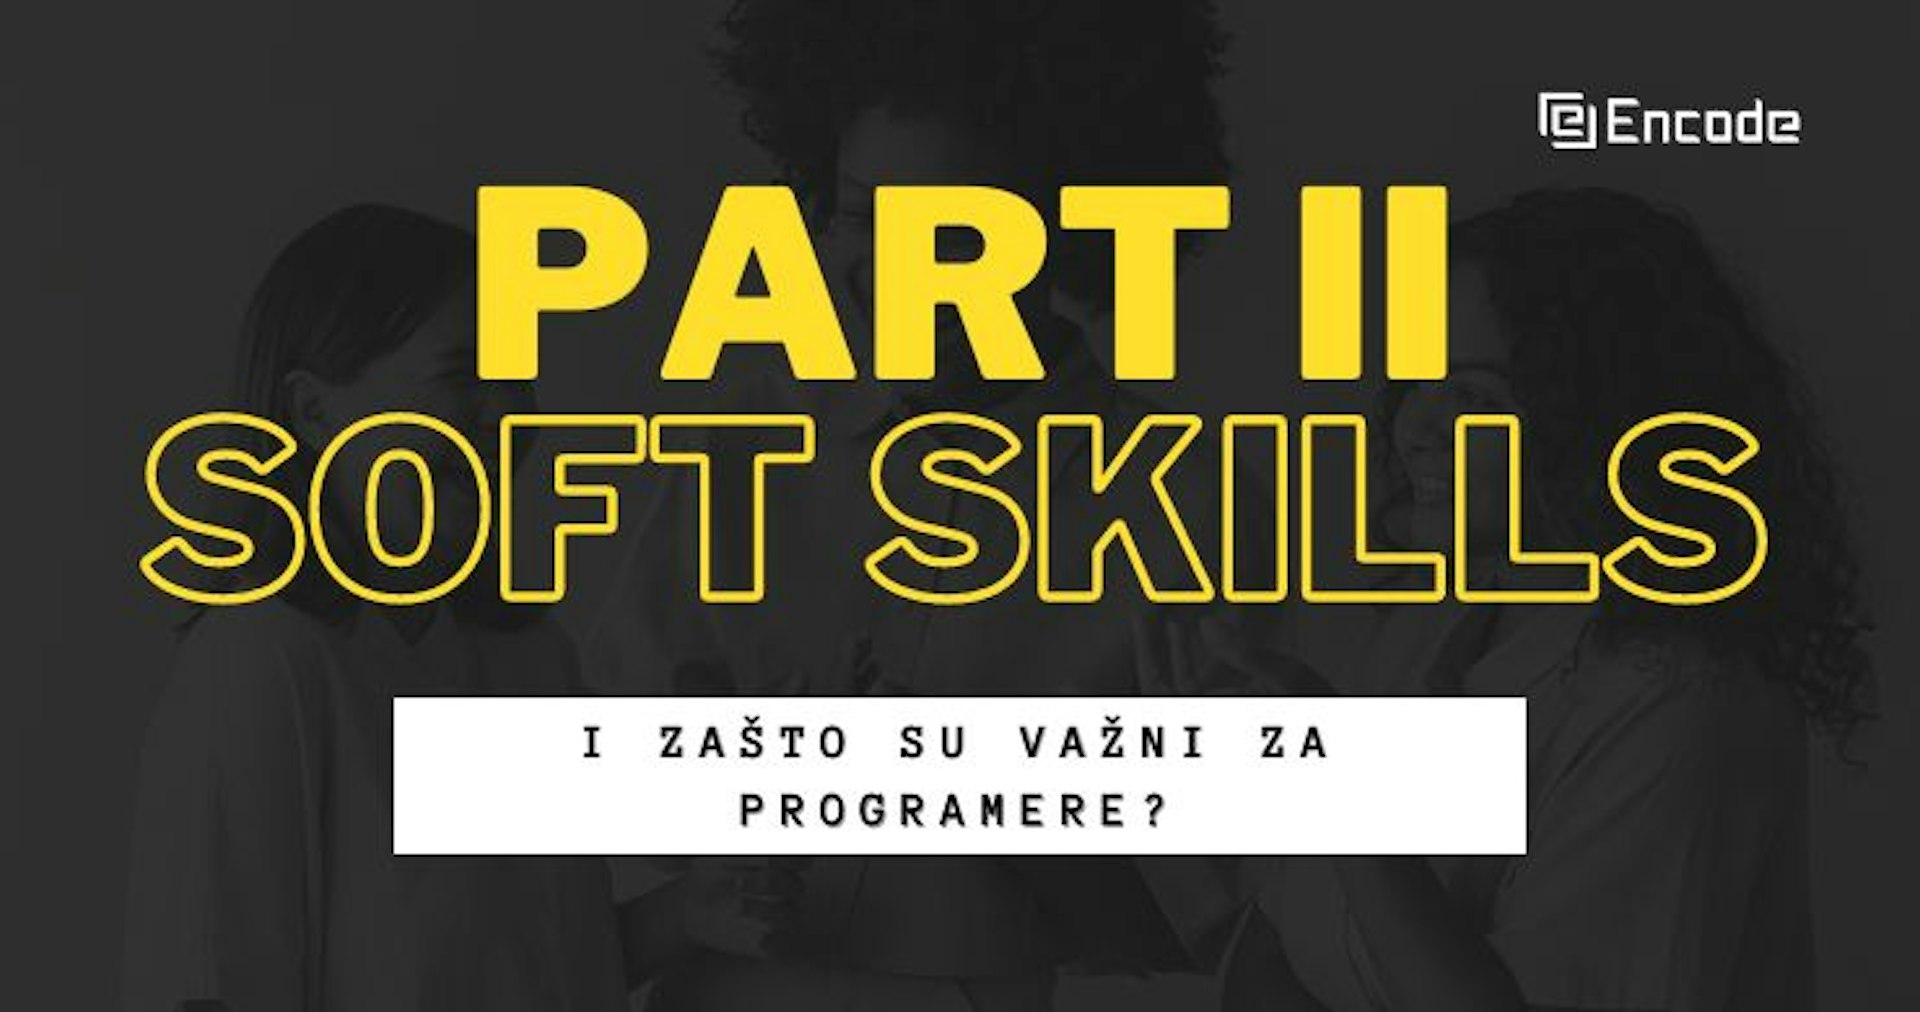 Šta su soft skills i zašto su važni za programere? (Part II)